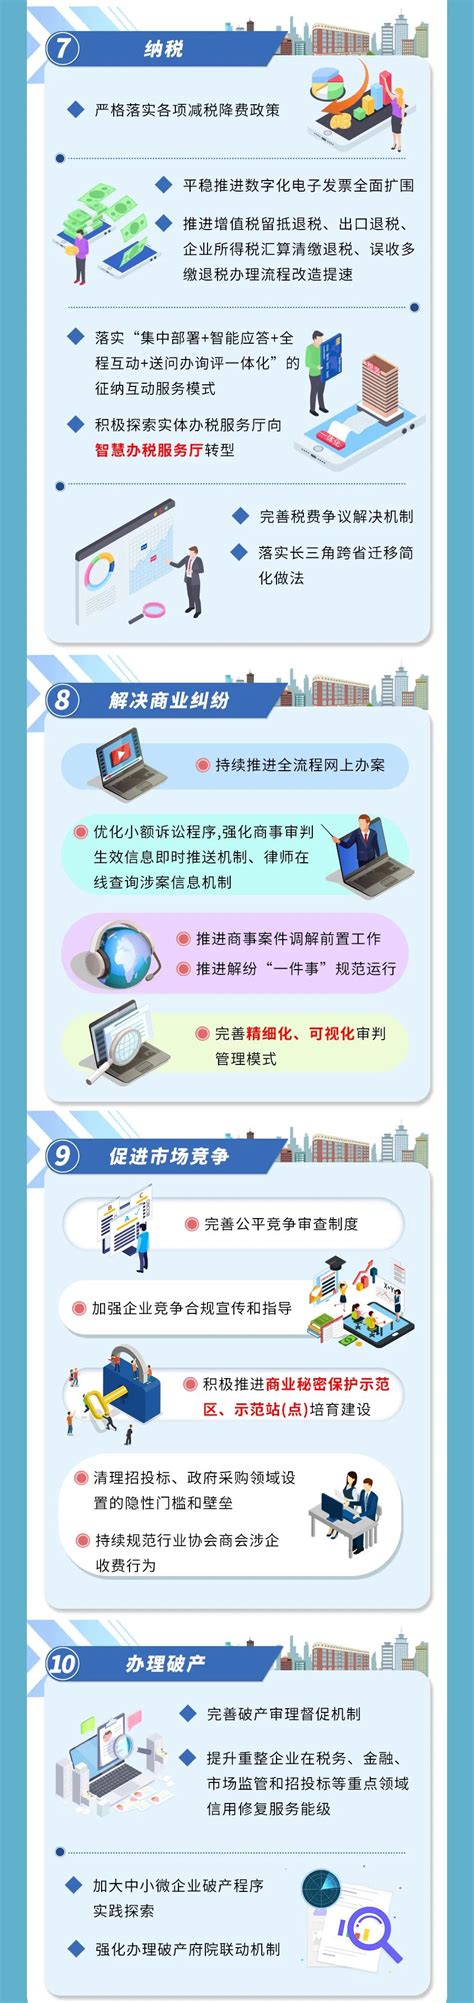 徐汇区官方网站优化平台